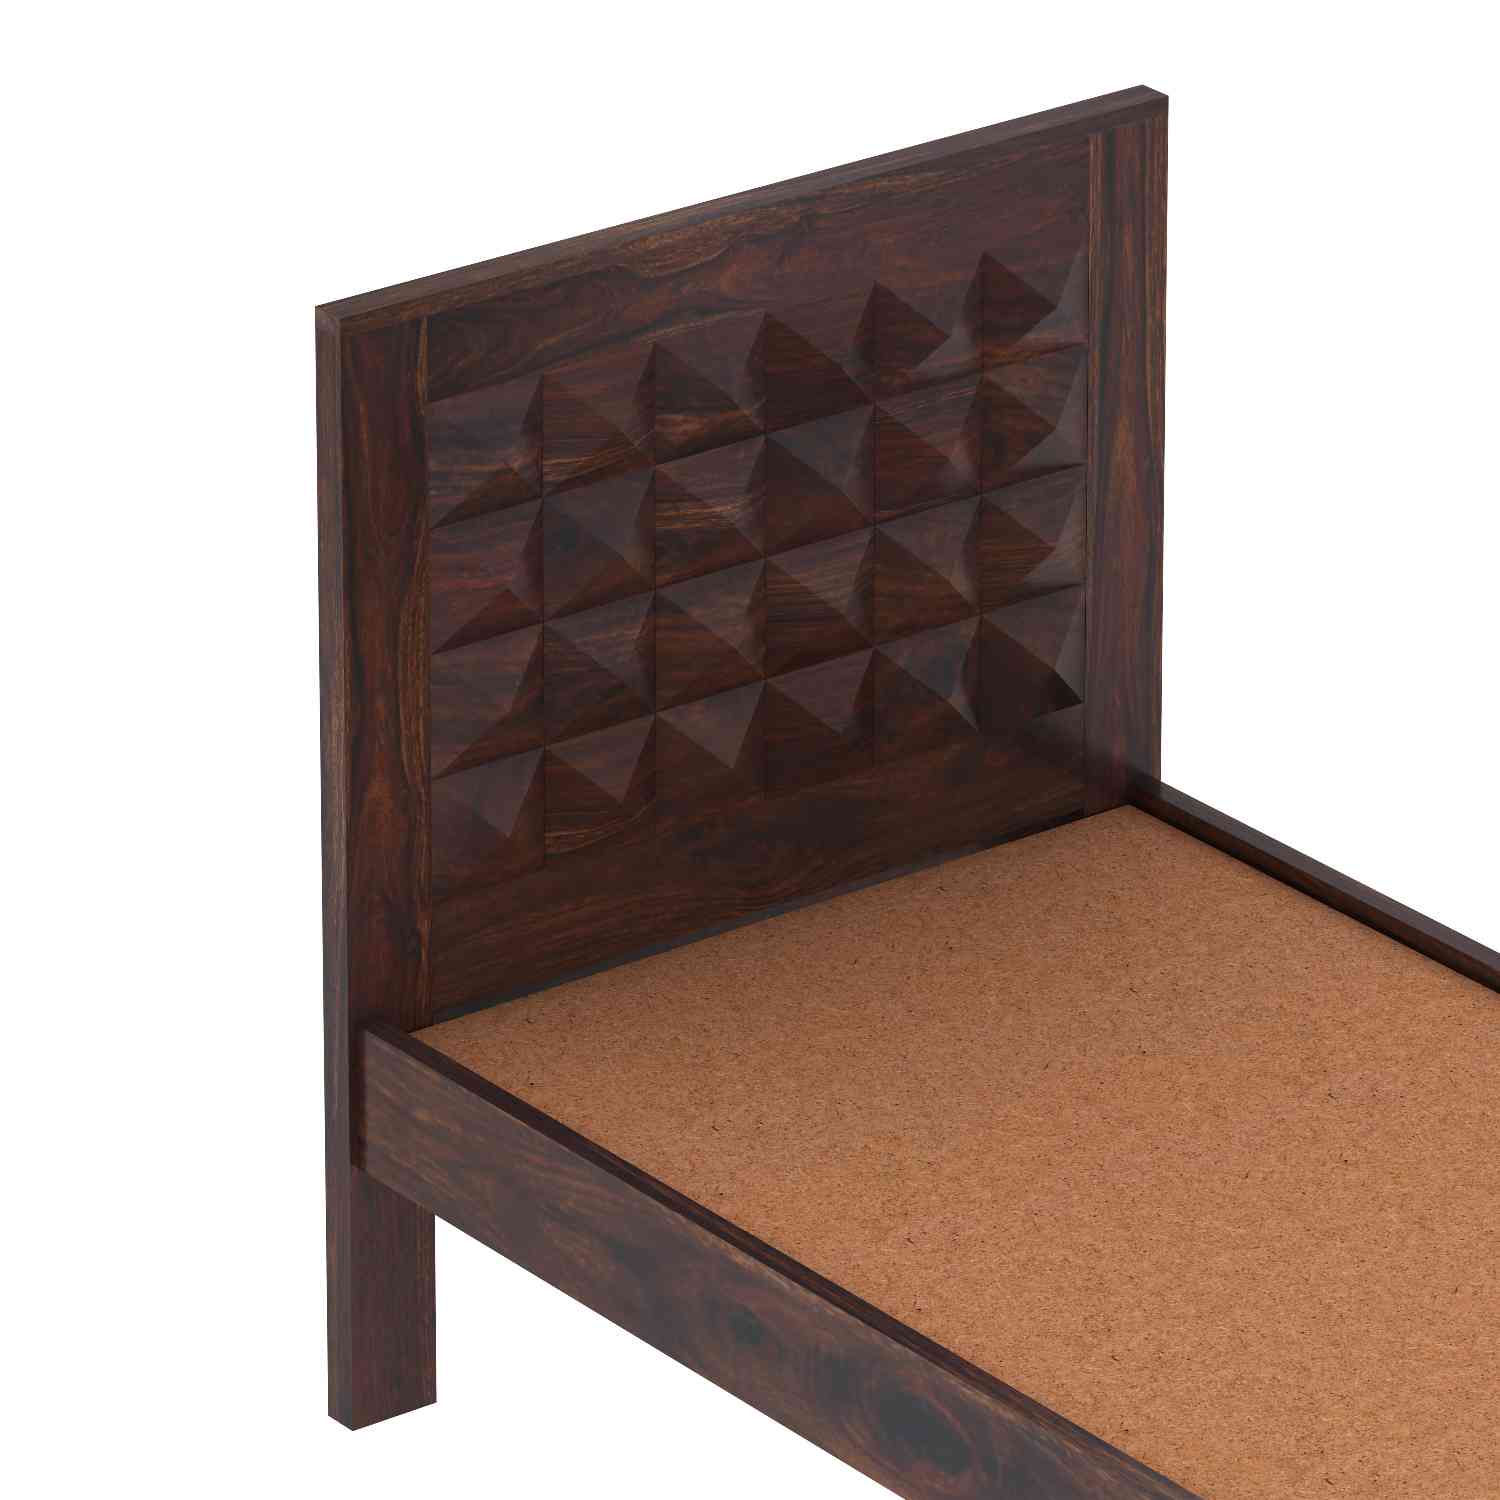 Sofia Solid Sheesham Wood Single Bed Without Storage (Walnut Finish)